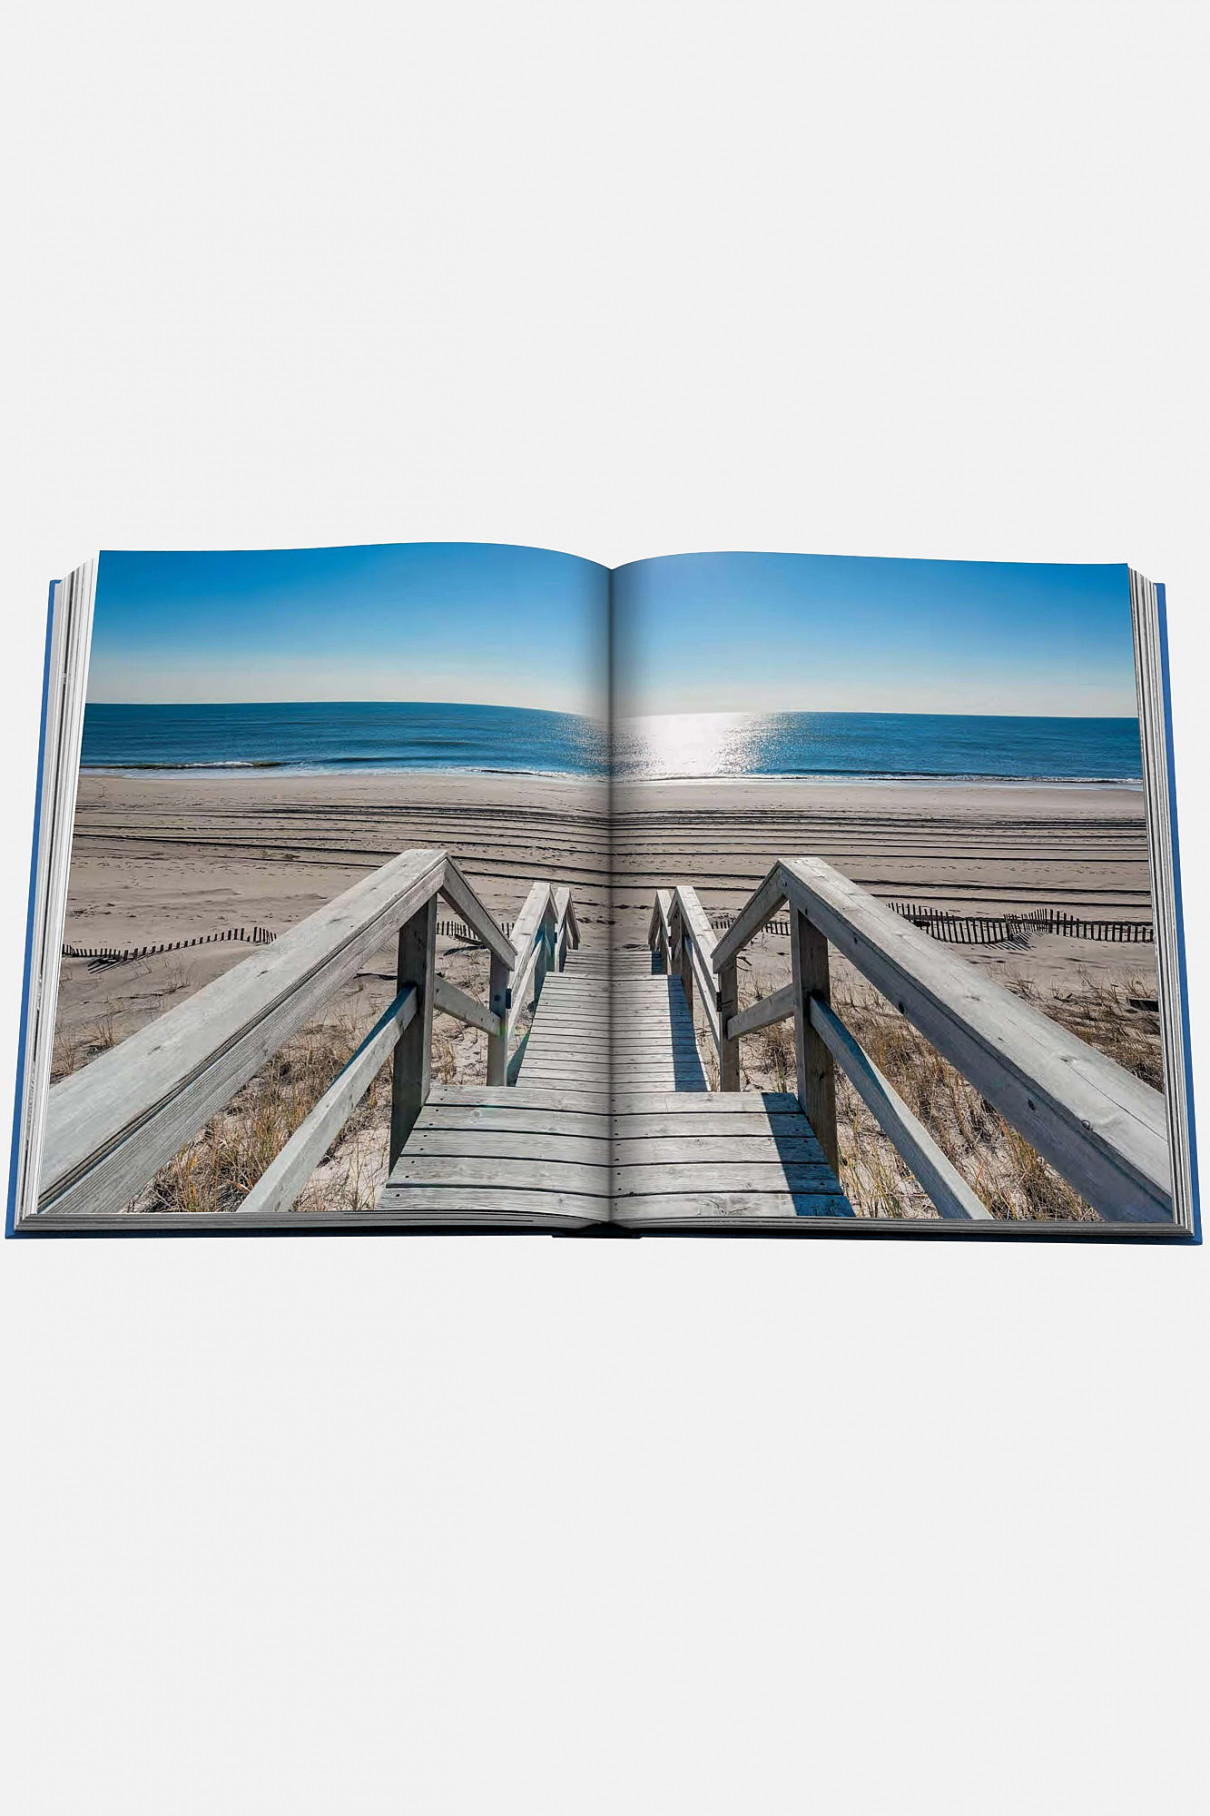 Книгa Assouline Travel Hamptons Private , арт. 9781614289876 купить в интернет-магазине